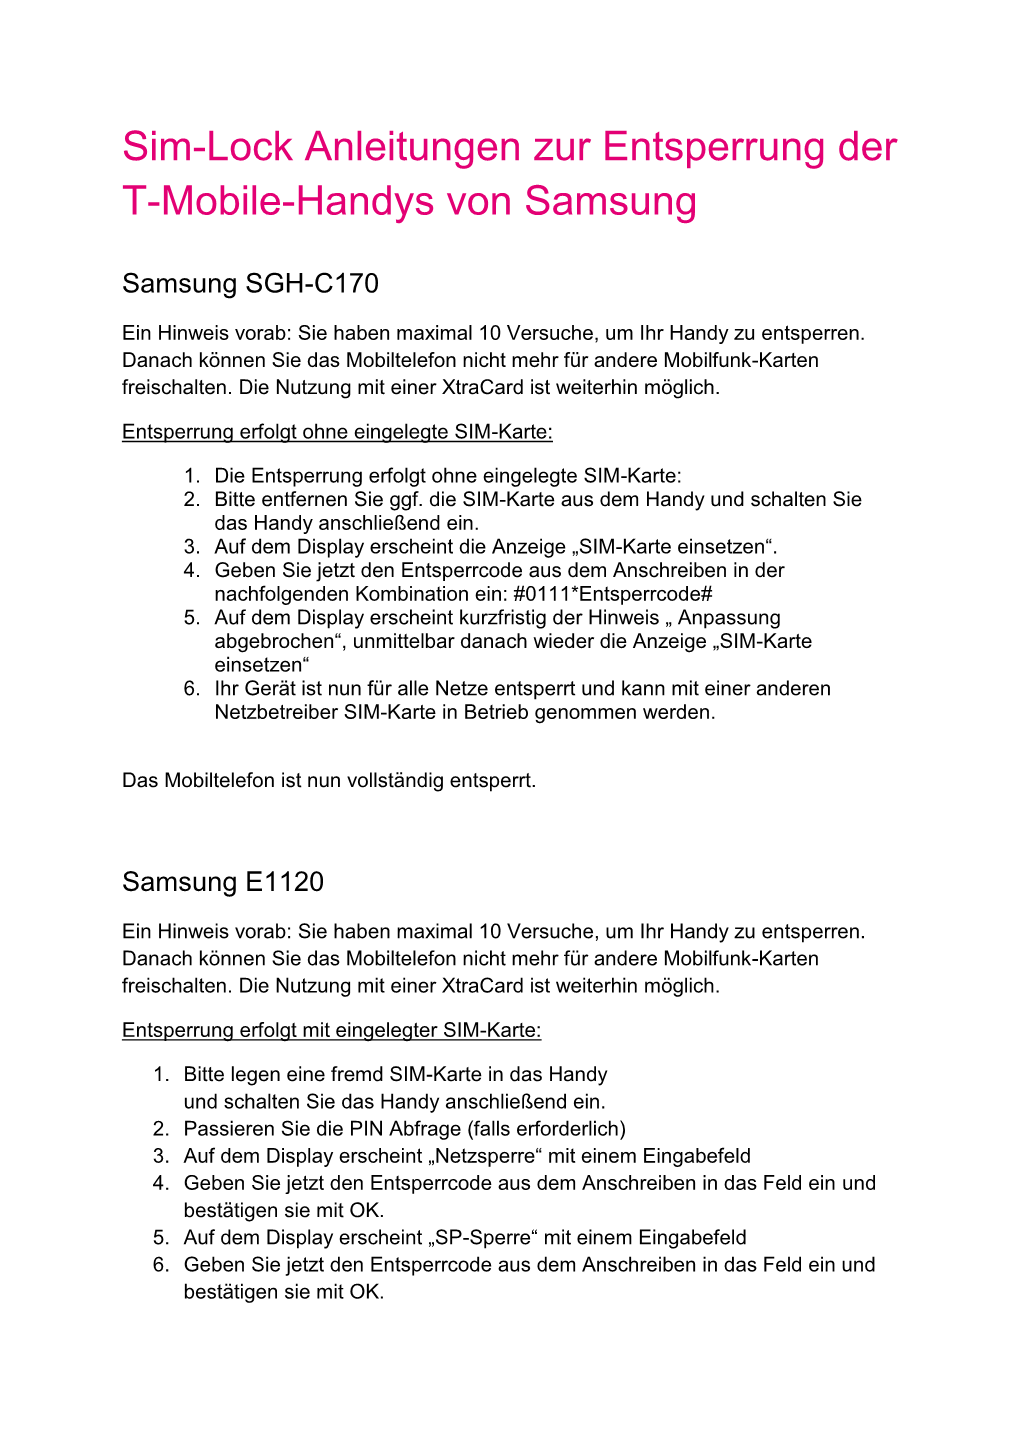 Sim-Lock Anleitungen Zur Entsperrung Der T-Mobile-Handys Von Samsung